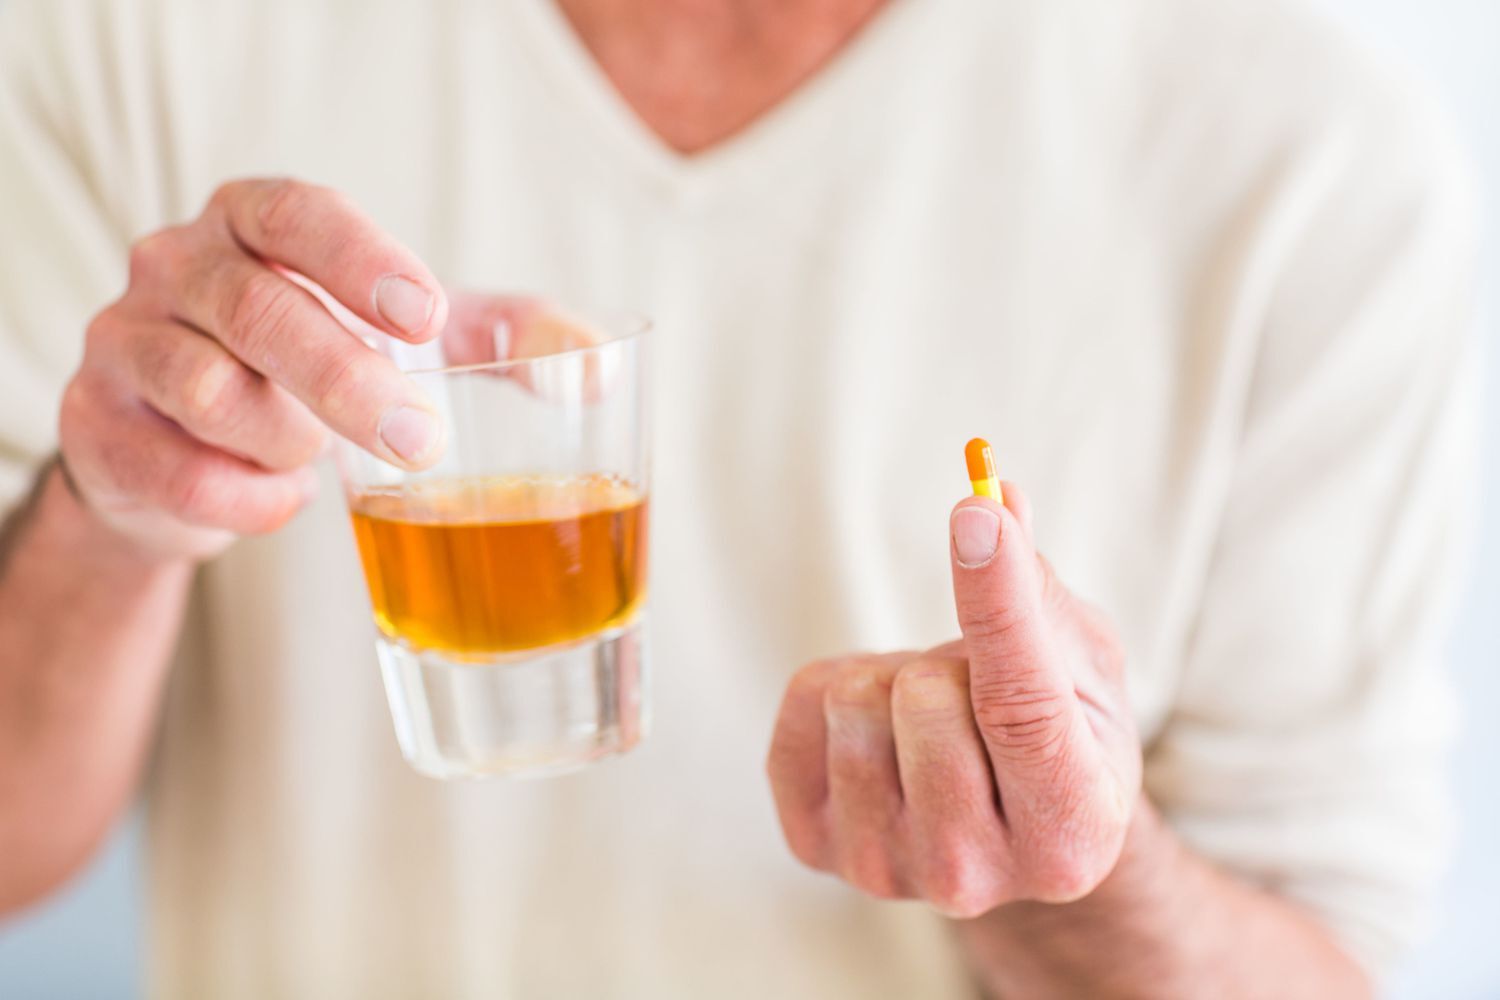 Фармацевт предупредил, что приём парацетамола после алкоголя опасен для здоровья